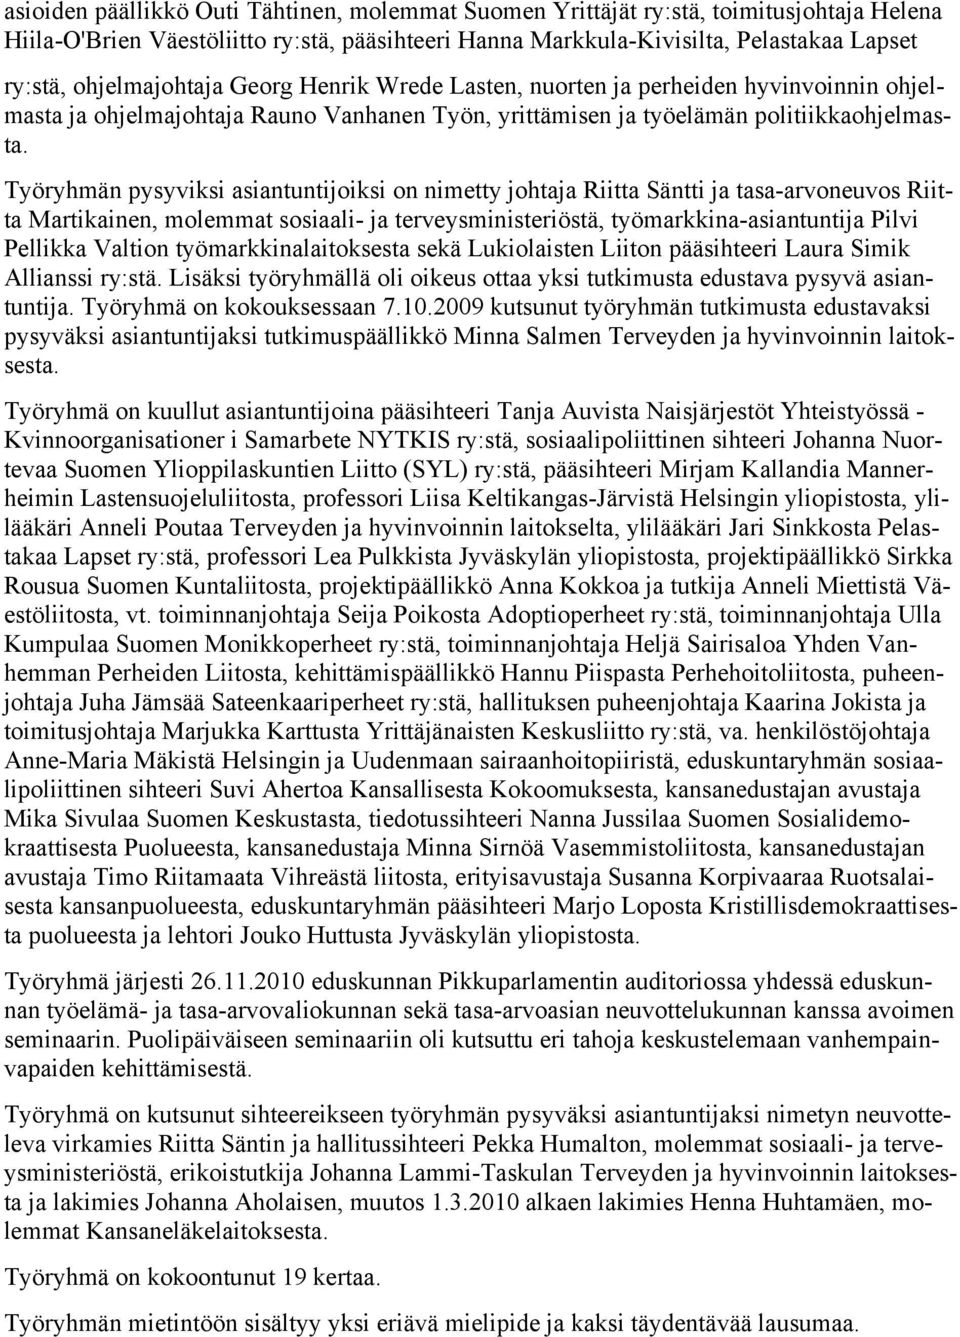 Työryhmän pysyviksi asiantuntijoiksi on nimetty johtaja Riitta Säntti ja tasa-arvoneuvos Riitta Martikainen, molemmat sosiaali- ja terveysministeriöstä, työmarkkina-asiantuntija Pilvi Pellikka